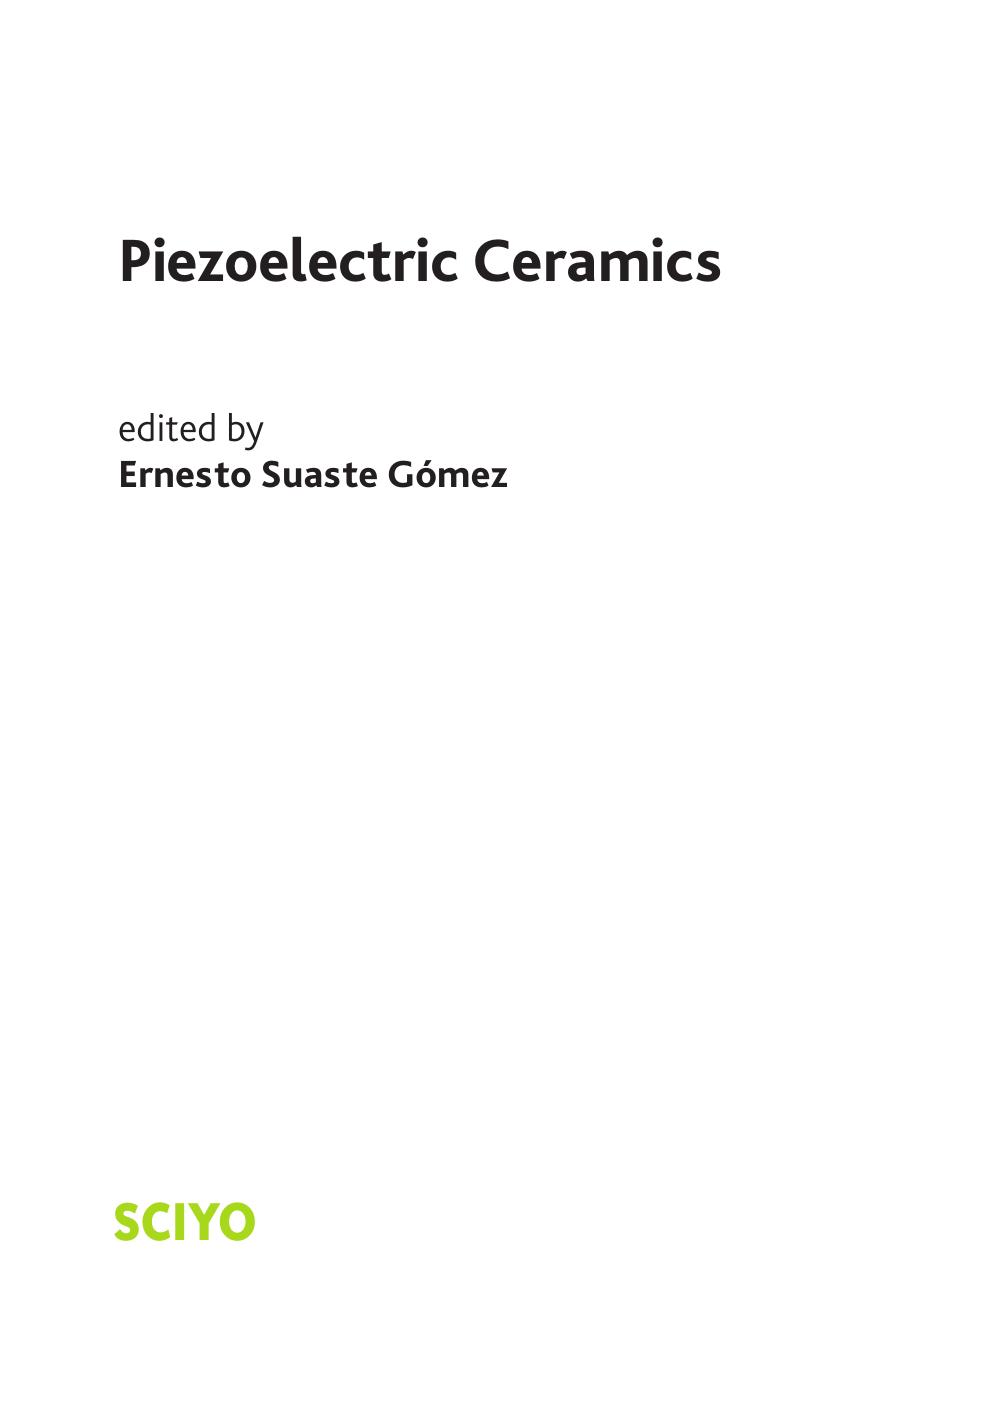 Piezoelectric Ceramics 2010.pdf